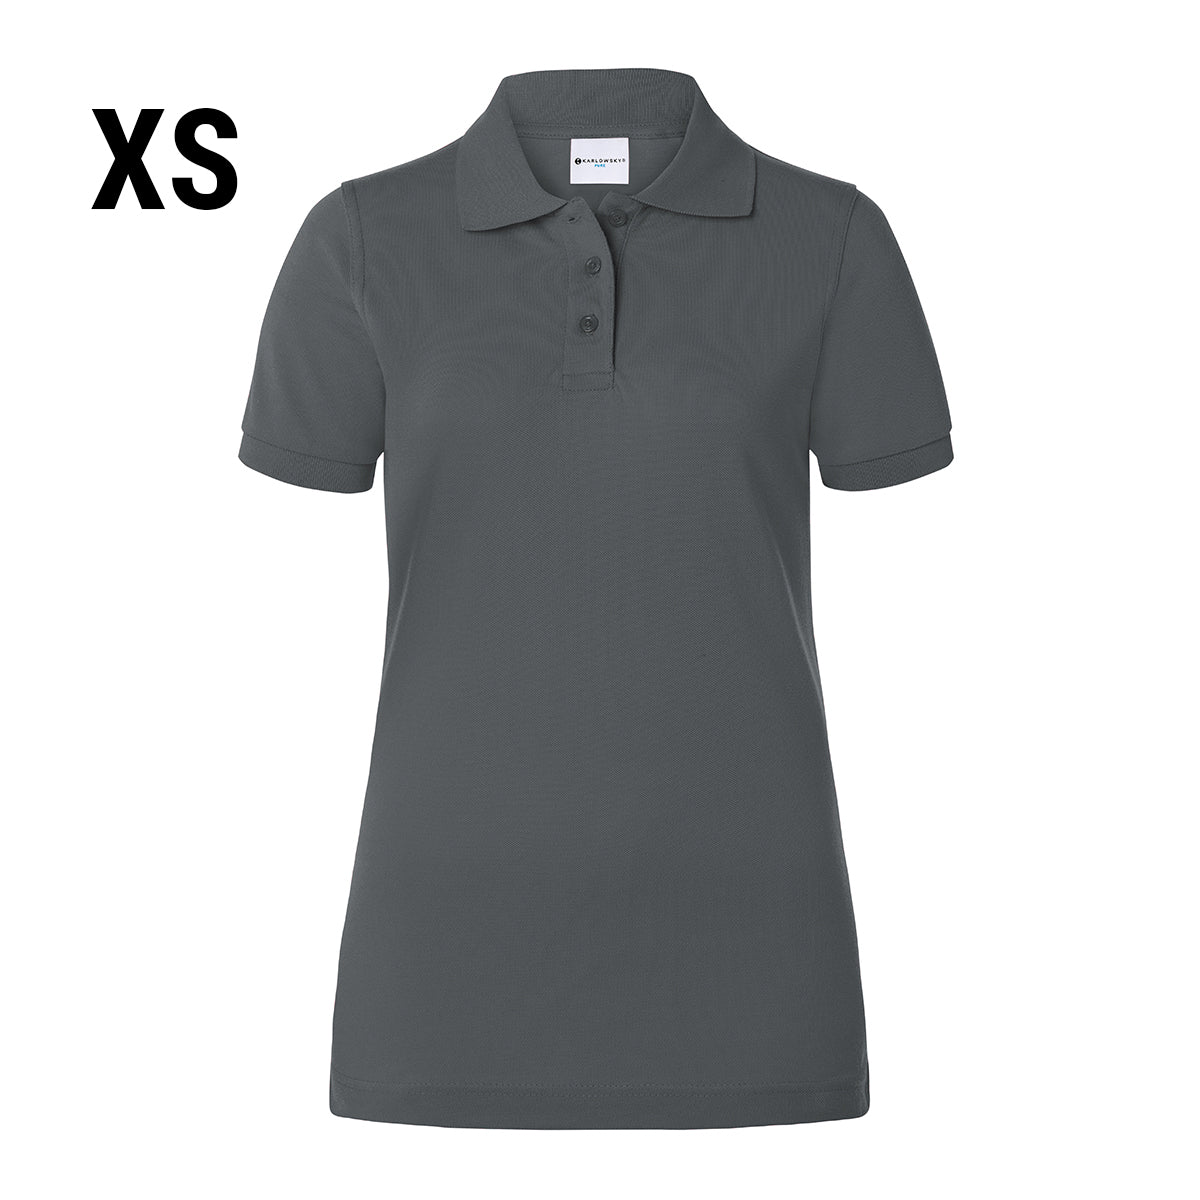 Karlowsky - Arbeidstøy Poloskjorte for kvinner Basic - Antrasitt - Størrelse: XS